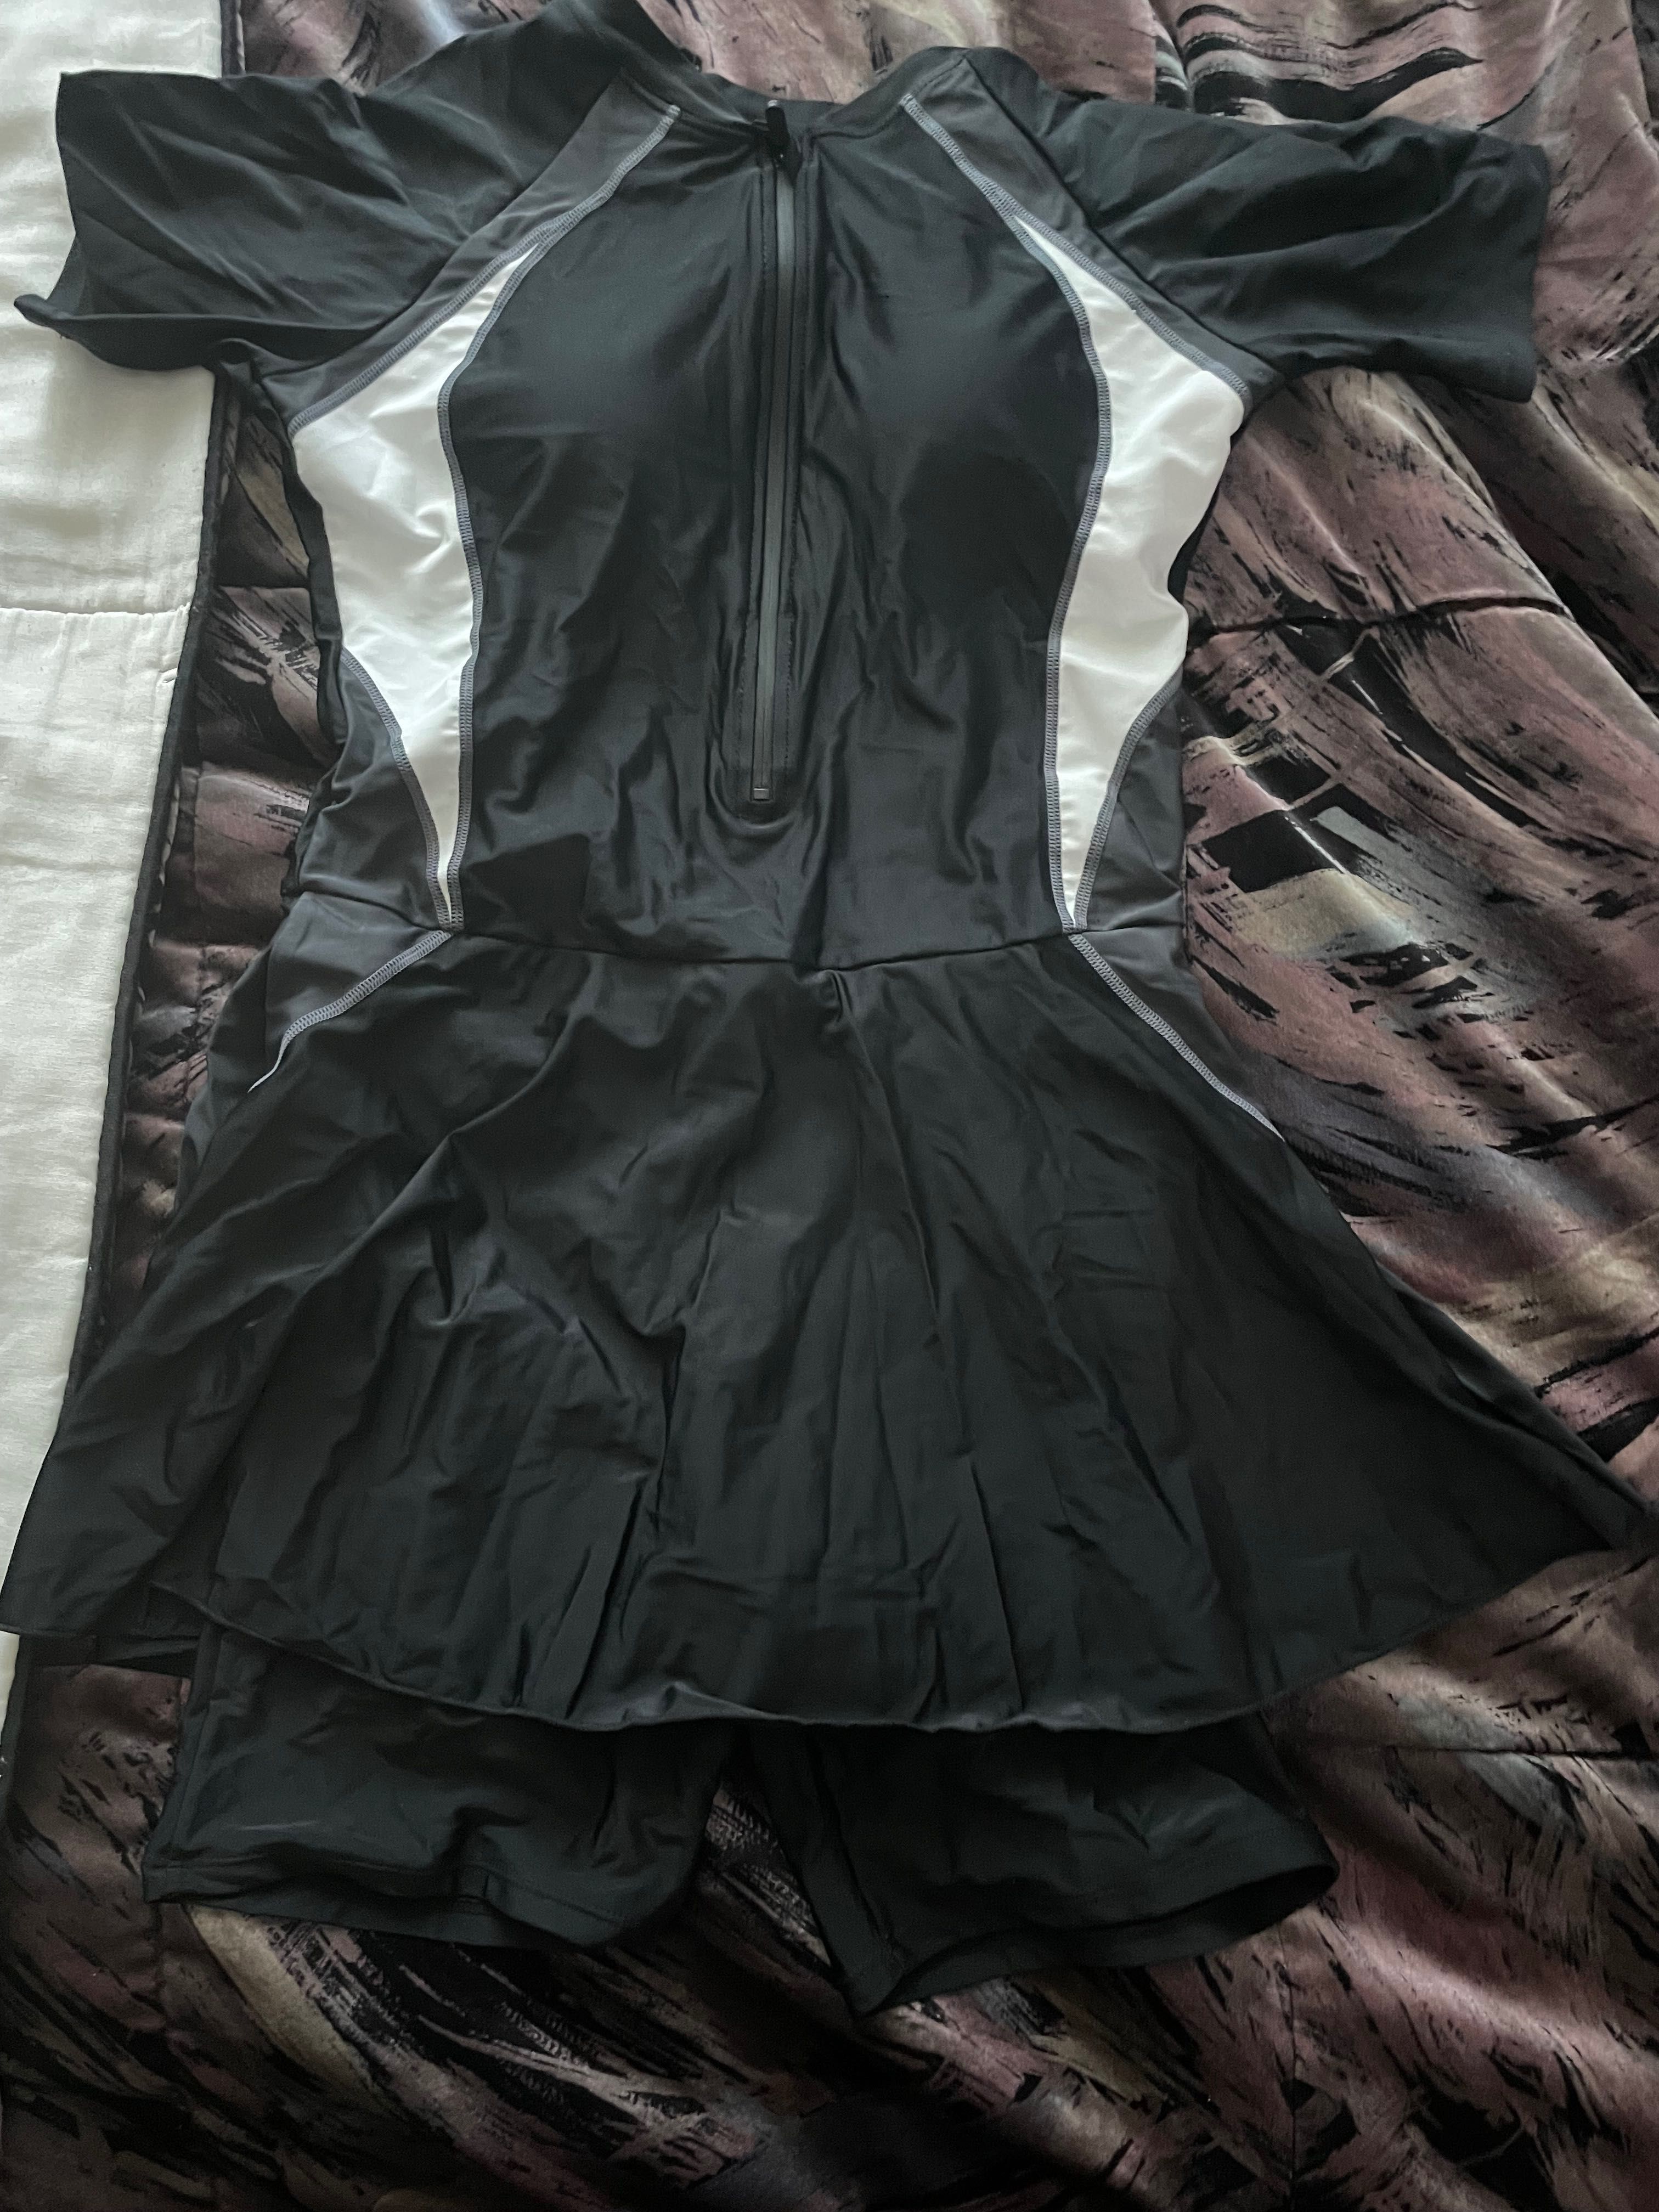 Vand costum de baie negru intreg,cu ambalaj ,negru,XL,fusta iegar